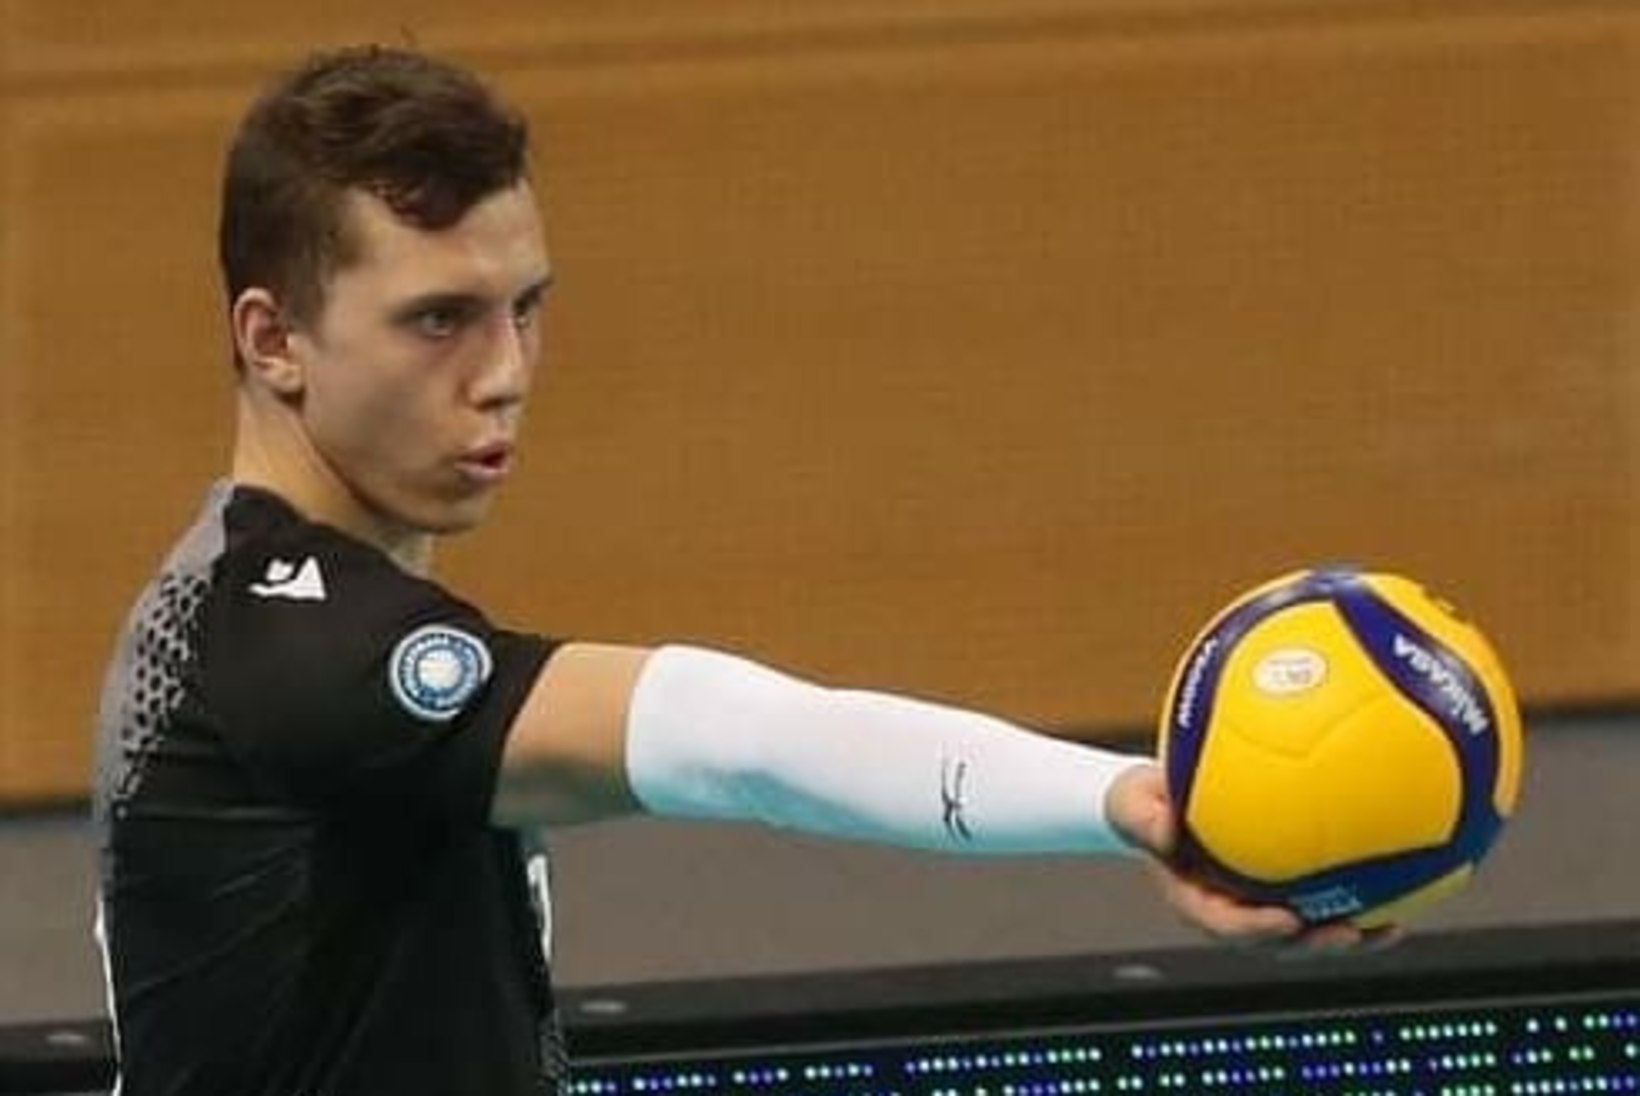 Saksamaal ennast tõestav Eesti võrkpallur: edu saladus on silma- ja ninaoperatsioonid